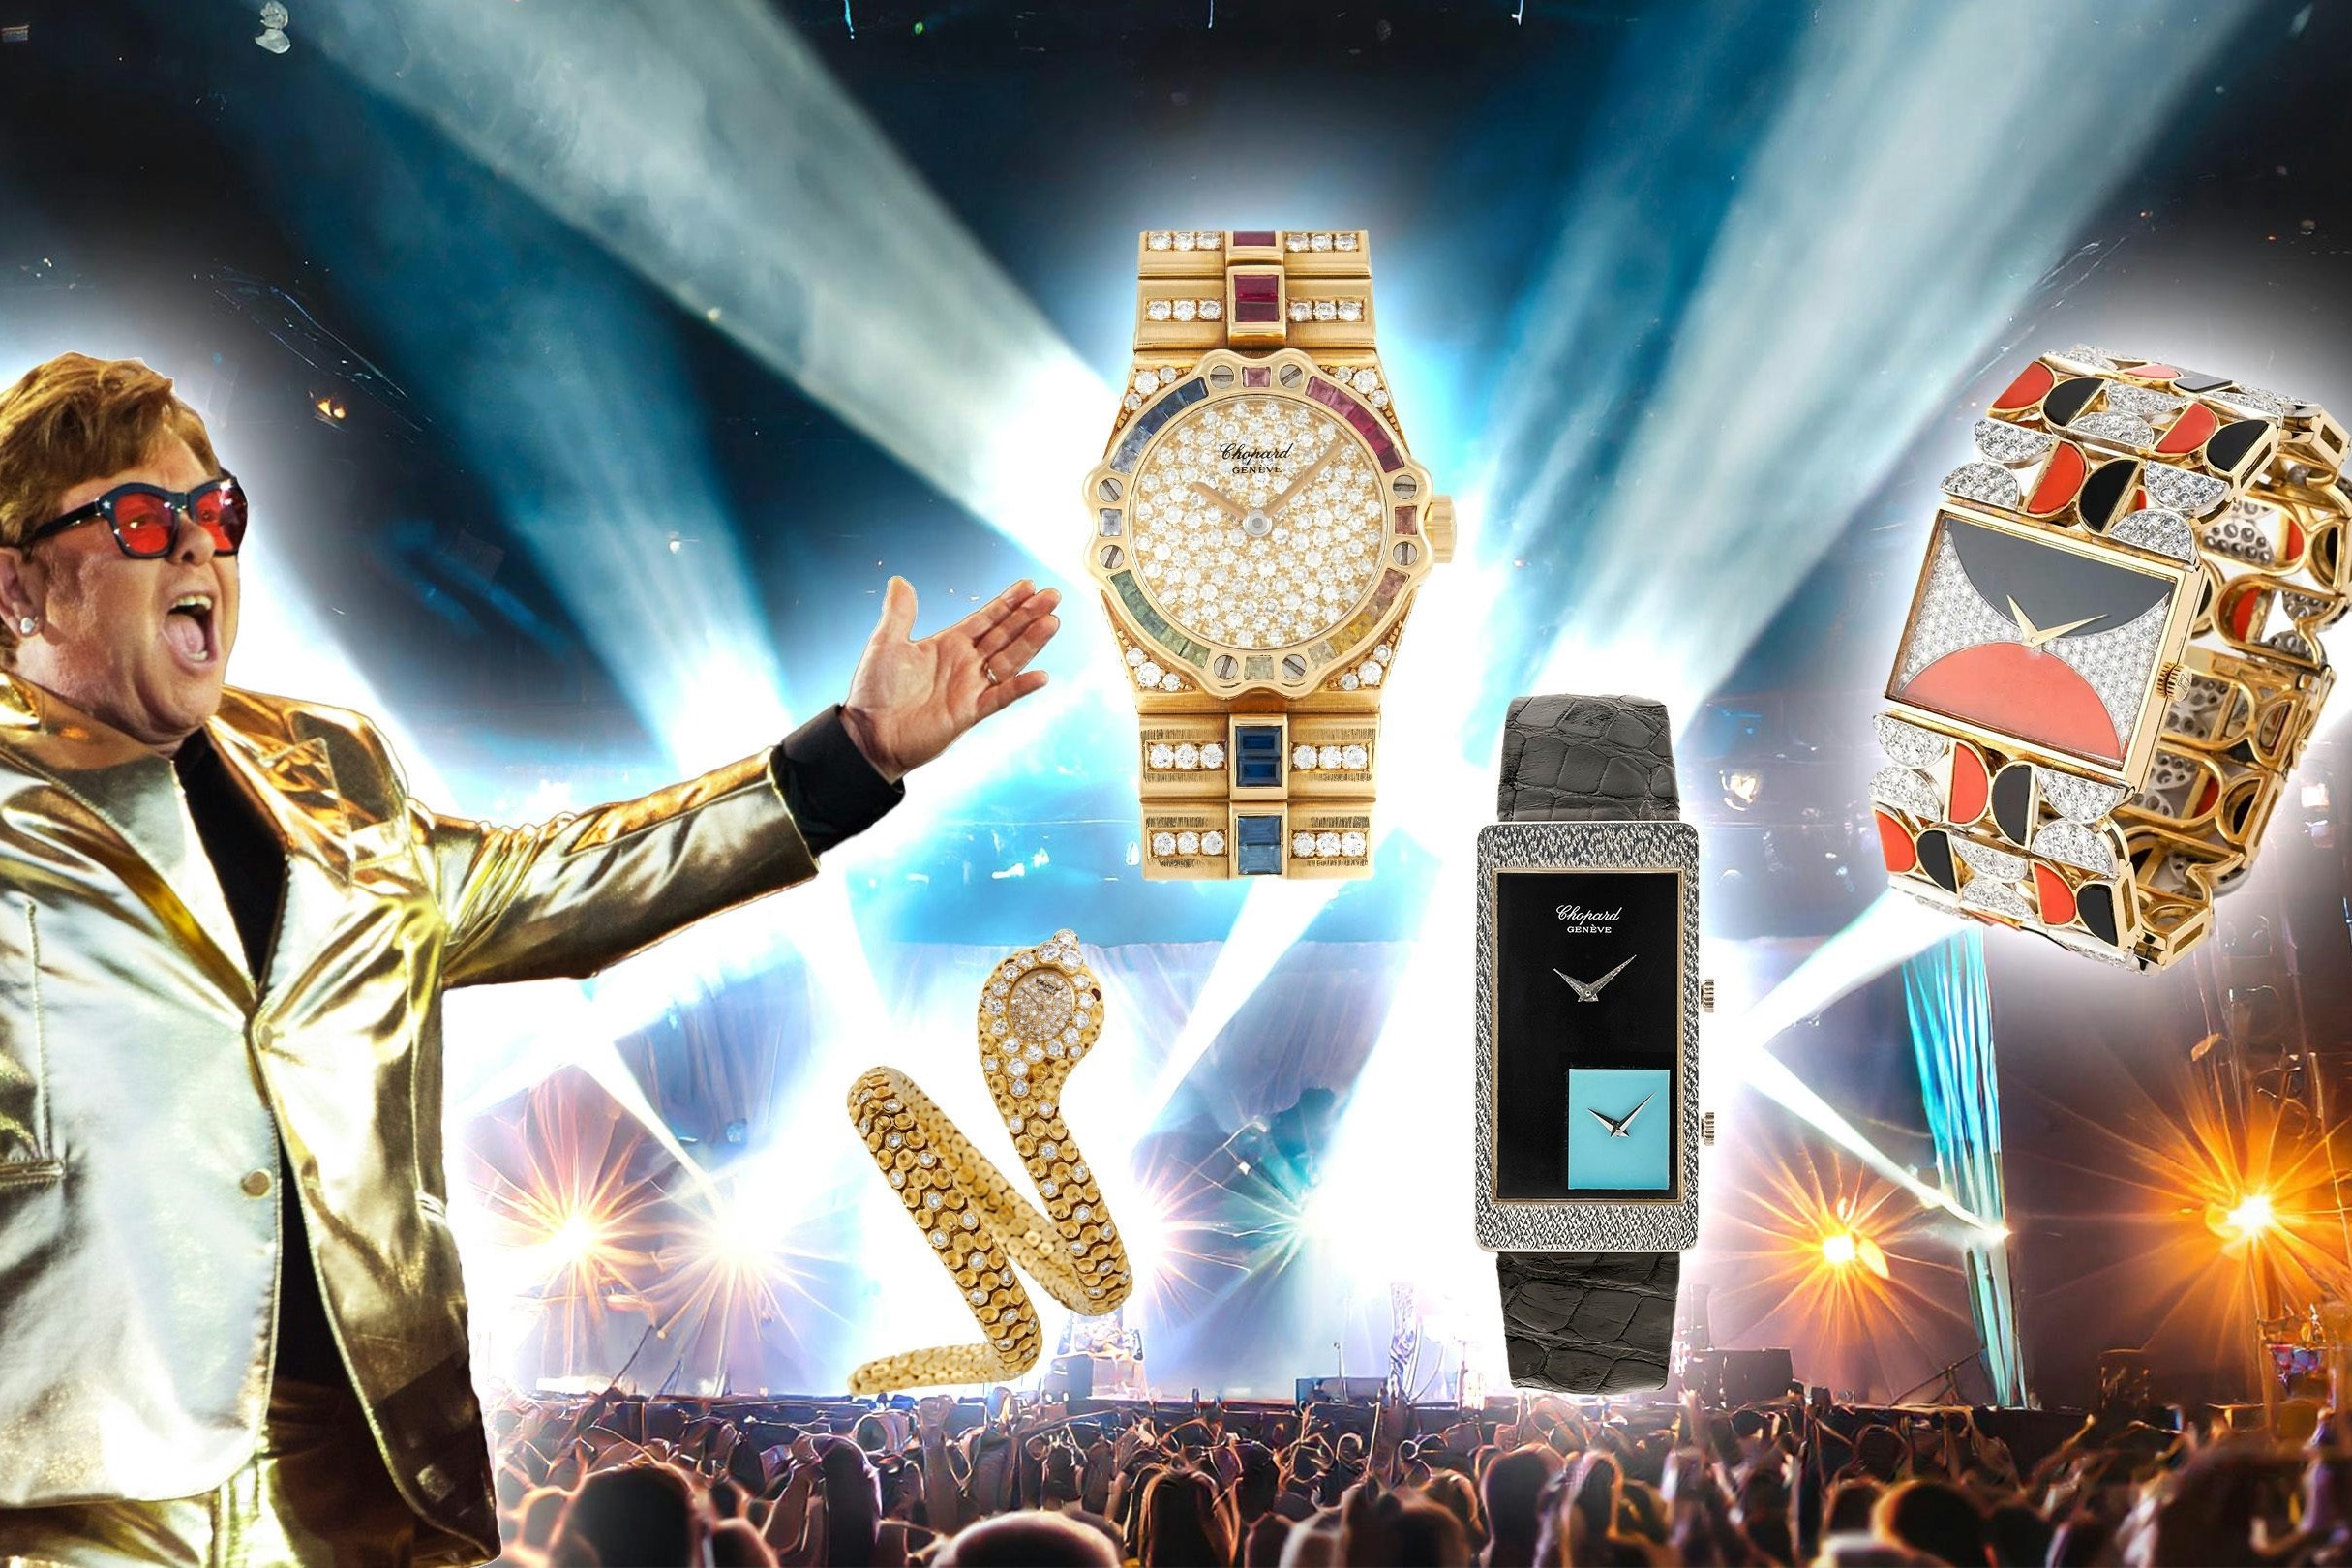 Bộ sưu tập của Elton John khiến chúng ta thật sự nên nhìn nhận lại đồng hồ Chopard cổ điển